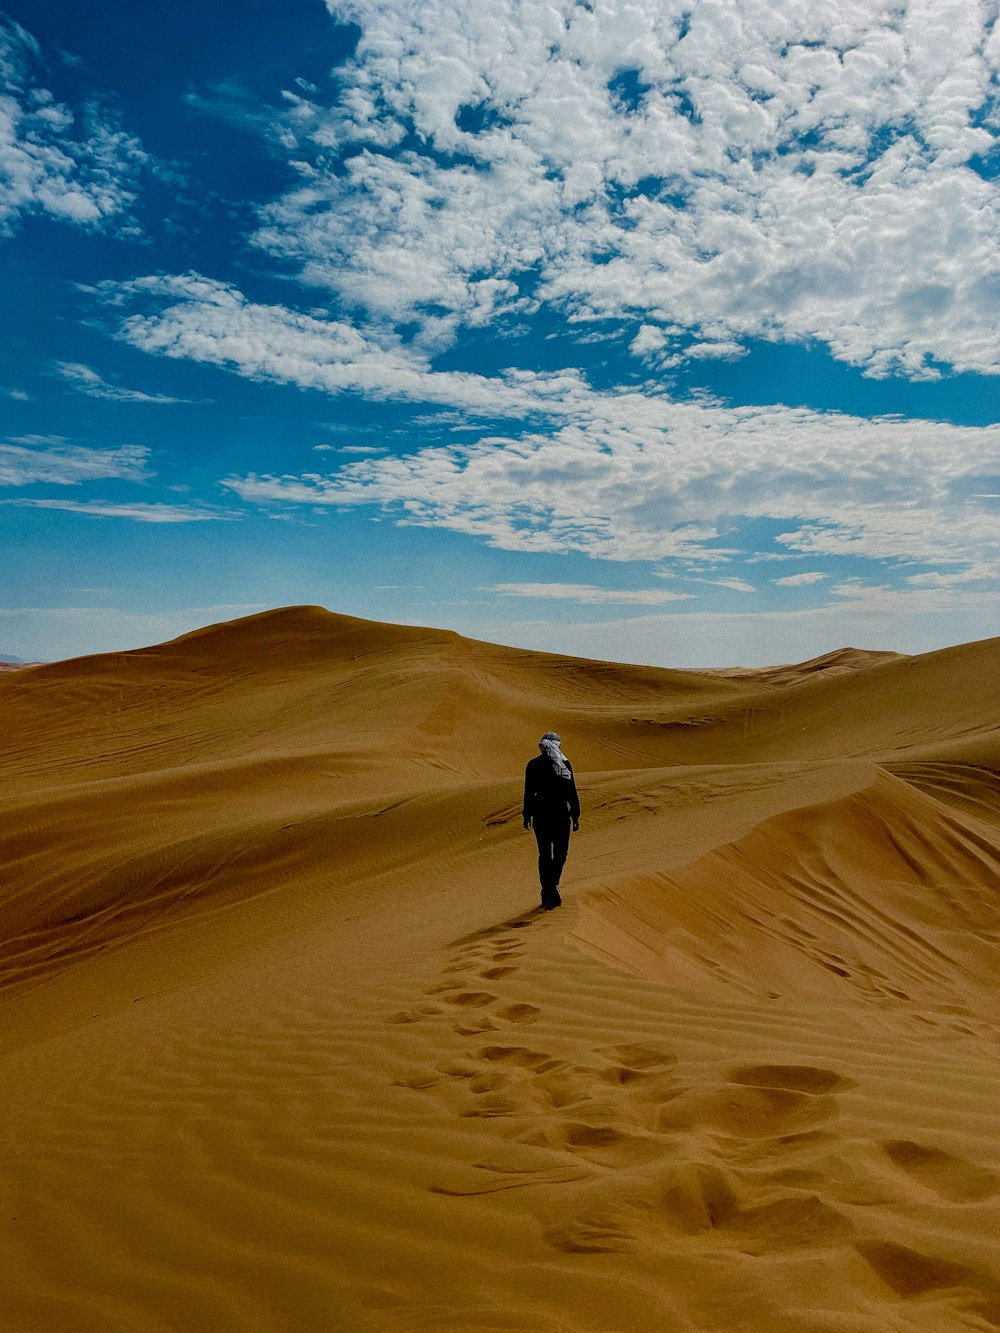 a man walking across a sandy desert under a blue sky